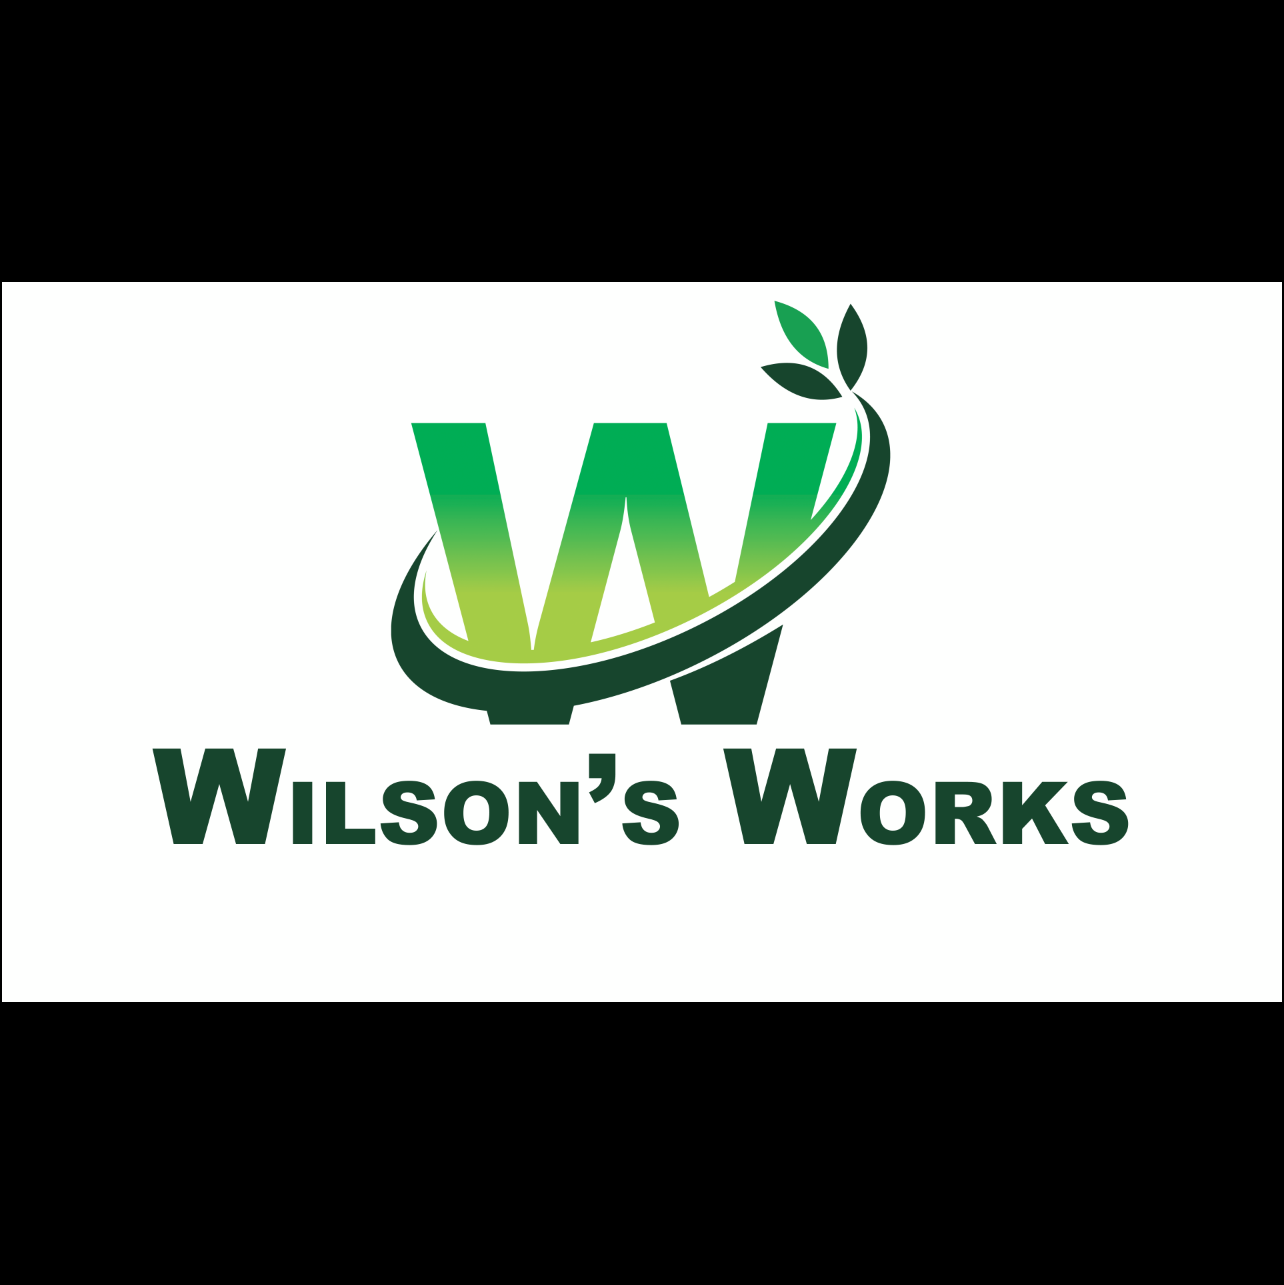 Wilson's Works